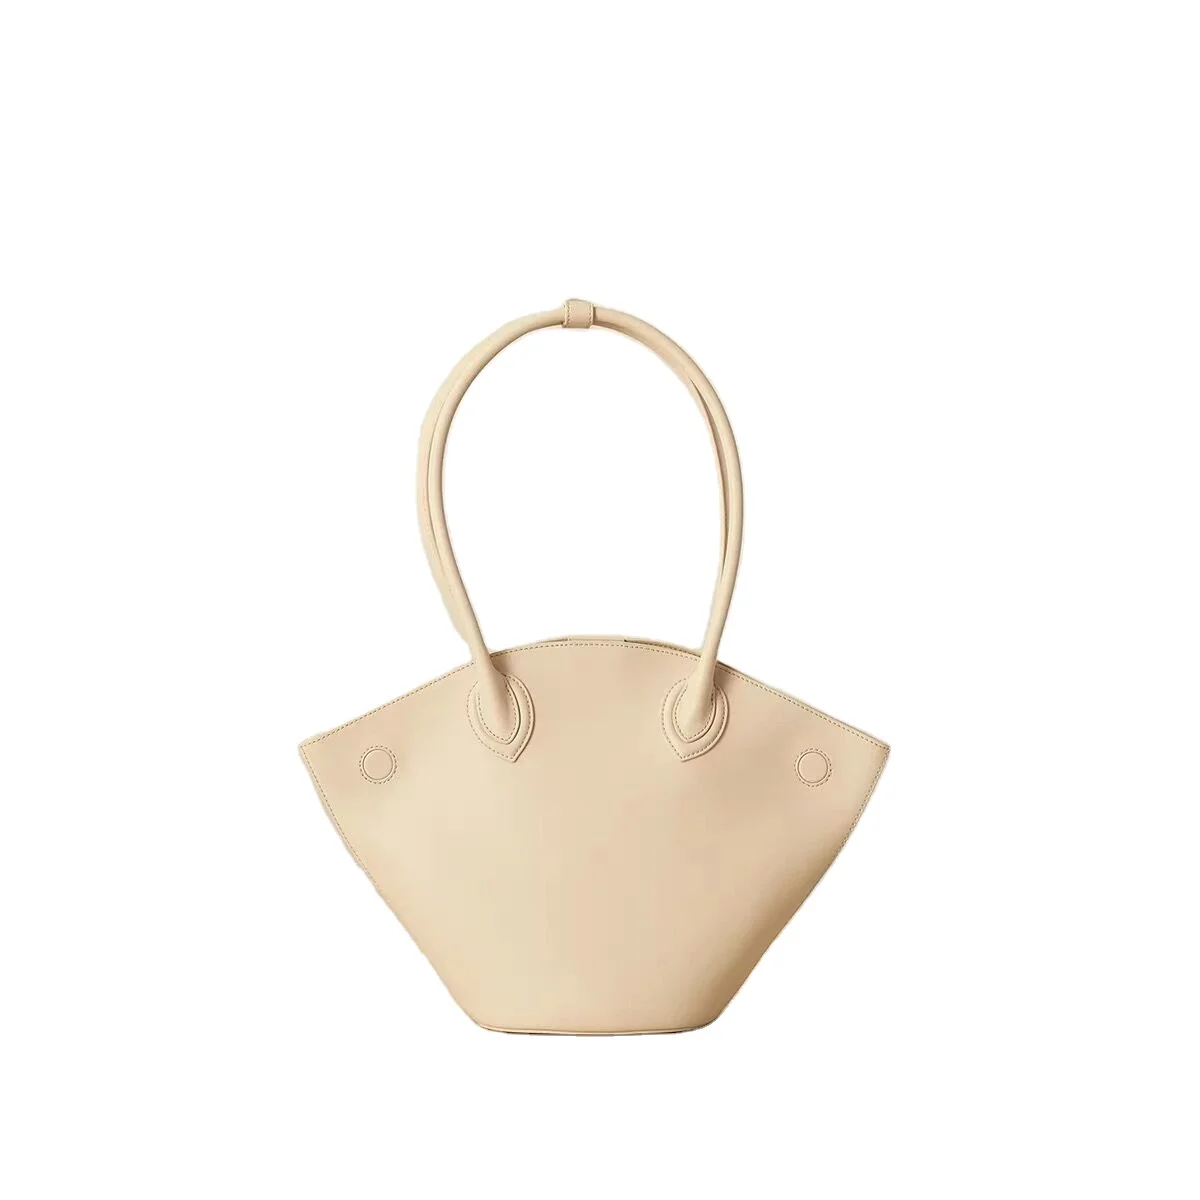 

Luxury ladies handbag fashion charming armpit bag shaped shopper shoulder bag